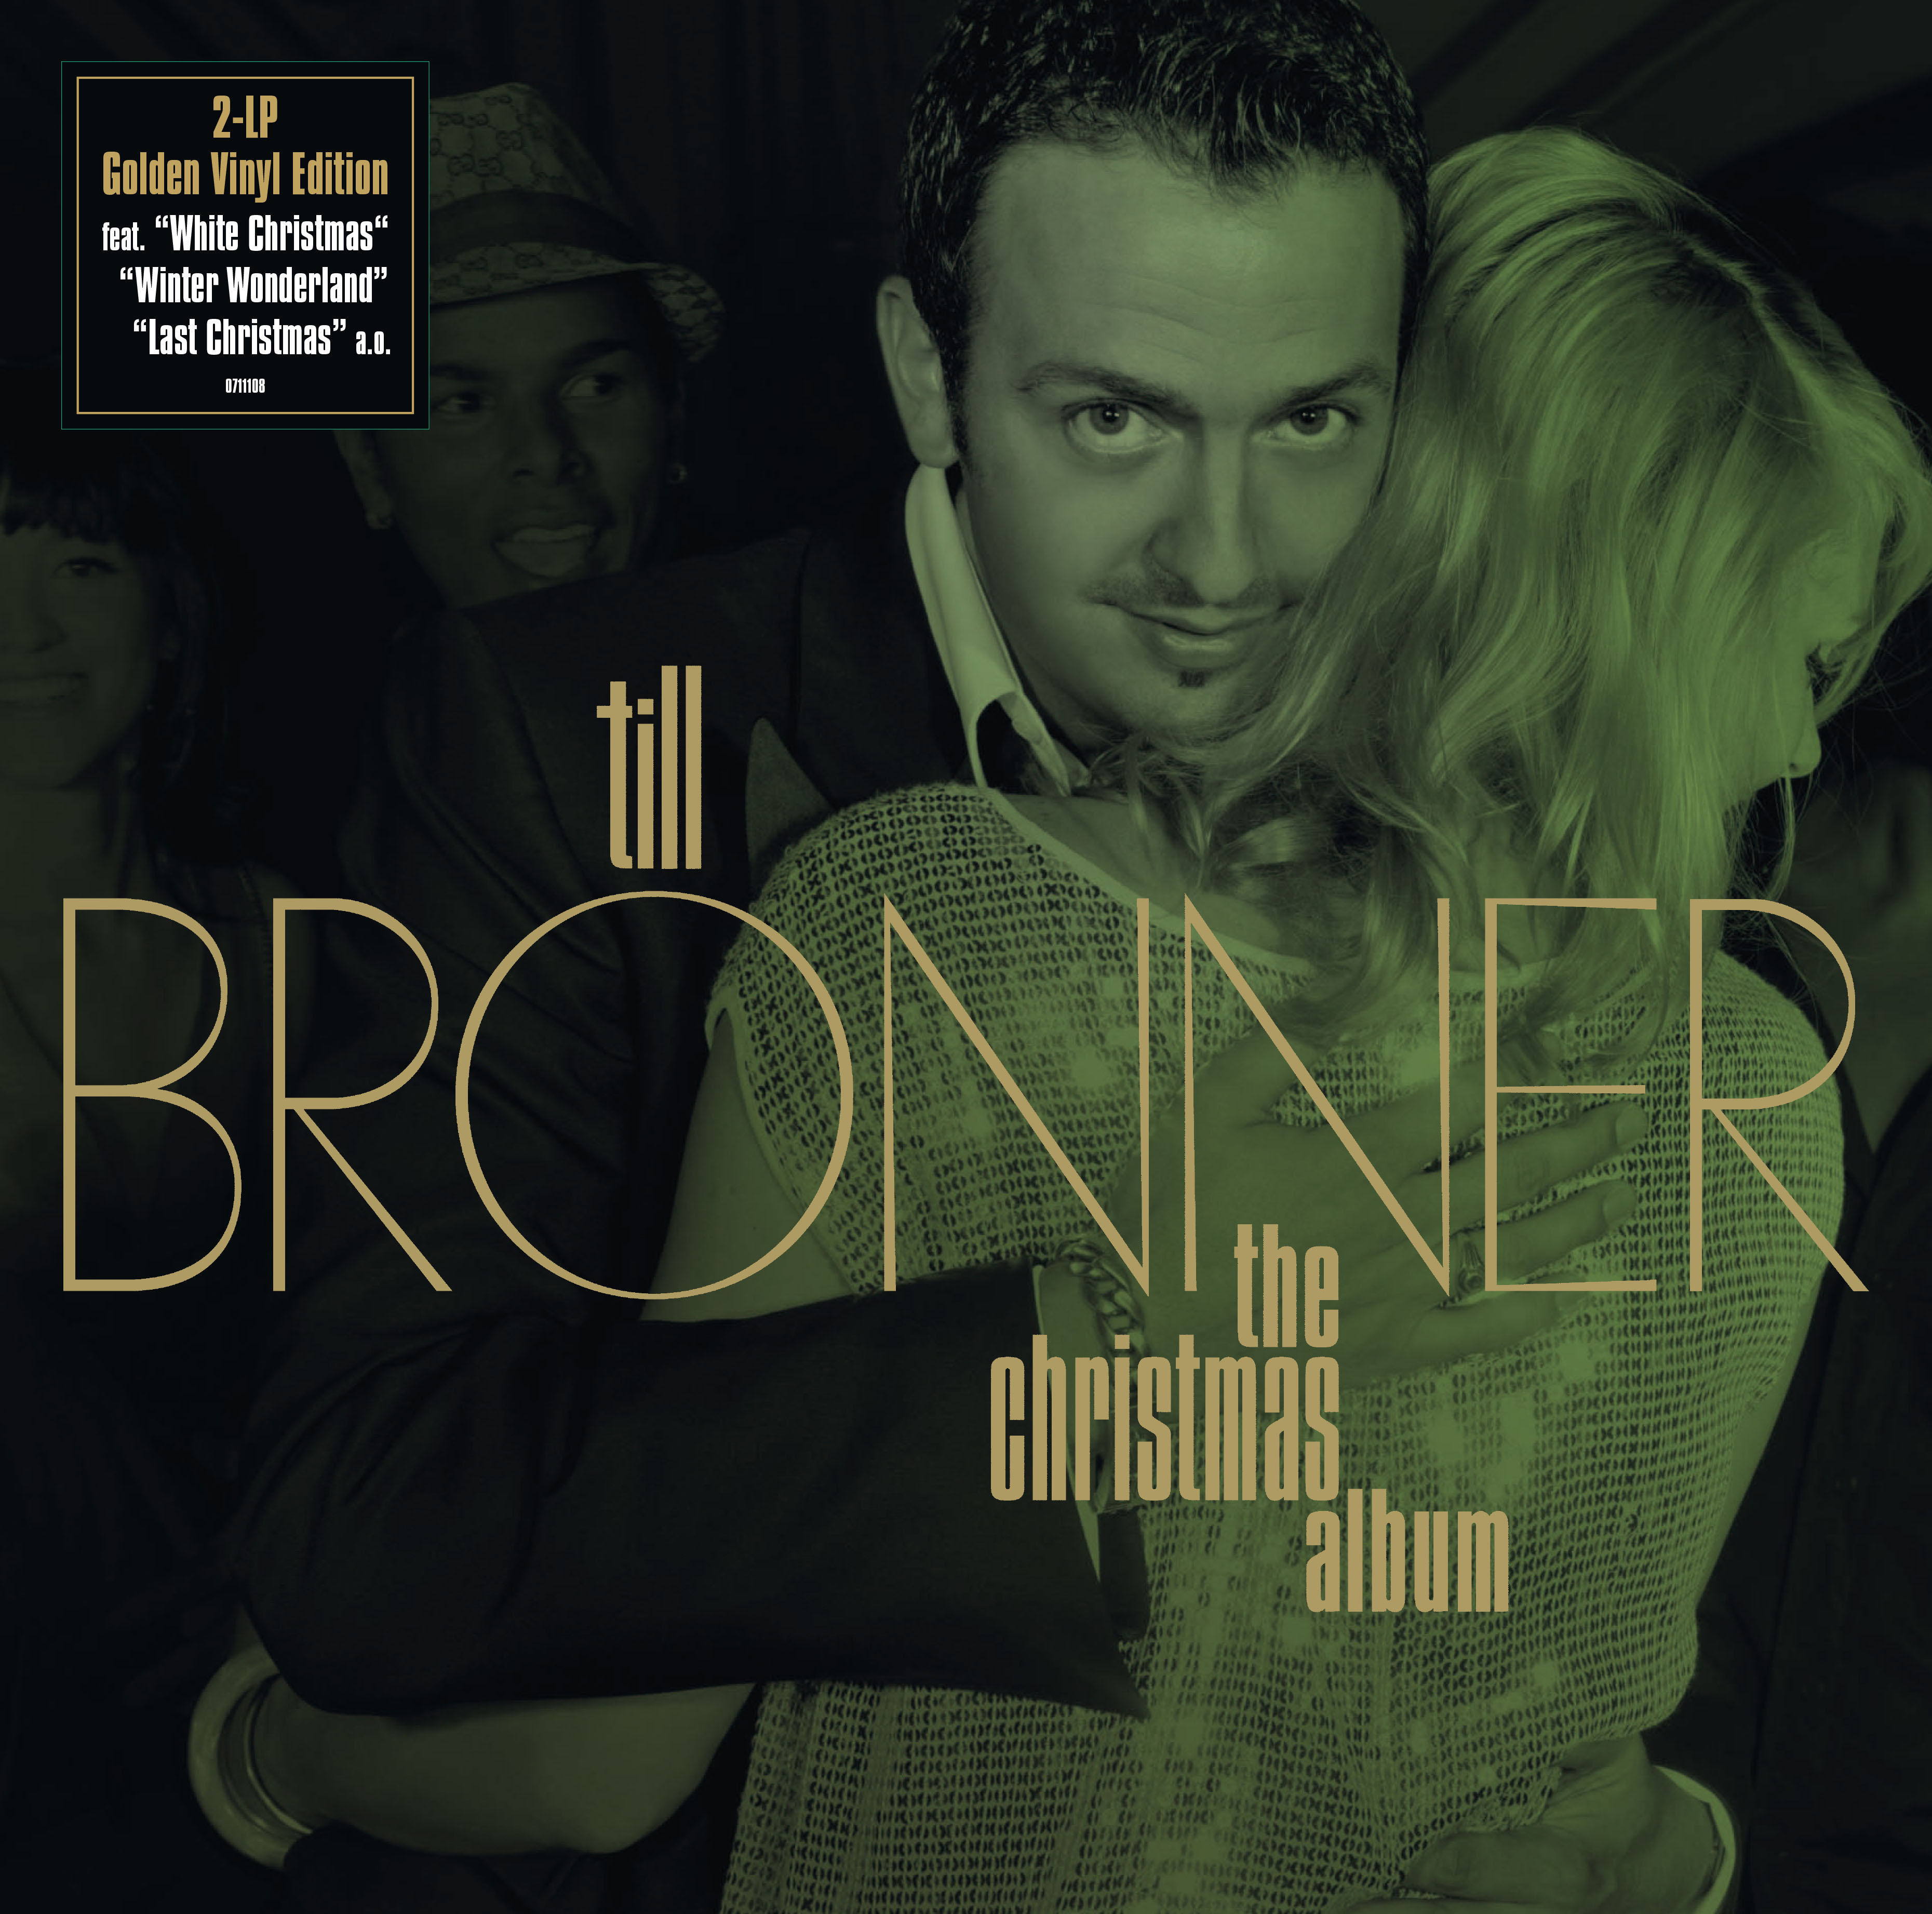 Till Brönner (Ltd.Gold (Vinyl) Edition) The - Christmas Album 